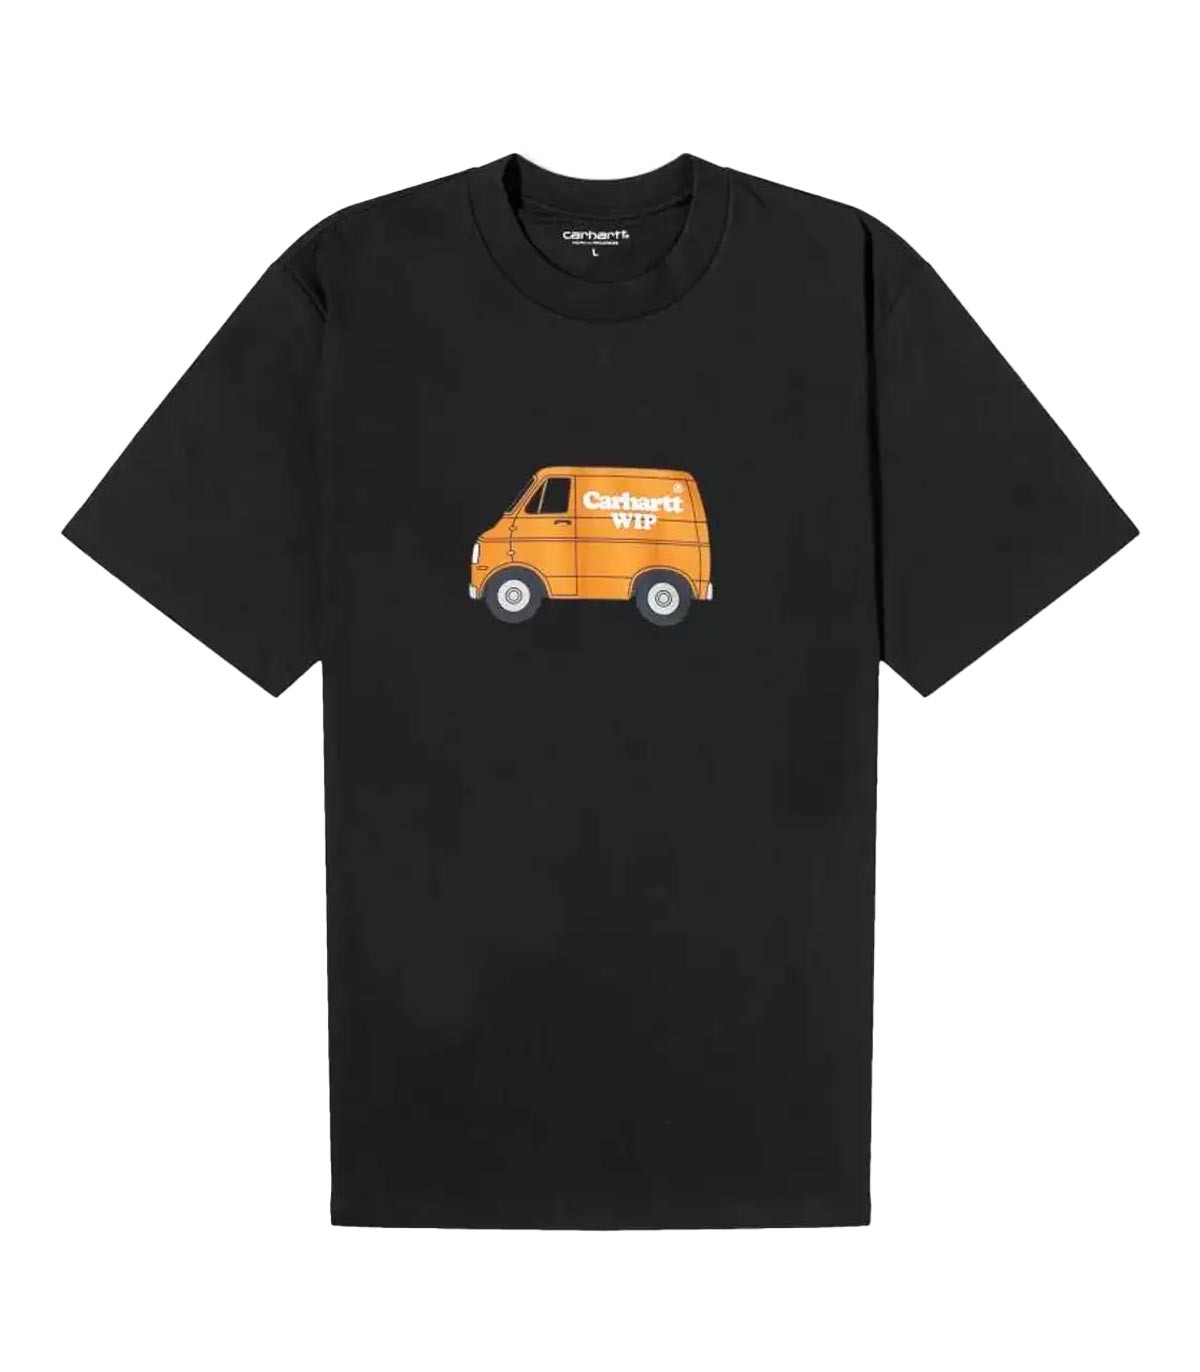 Carhartt Wip - Camiseta Mystery Machine